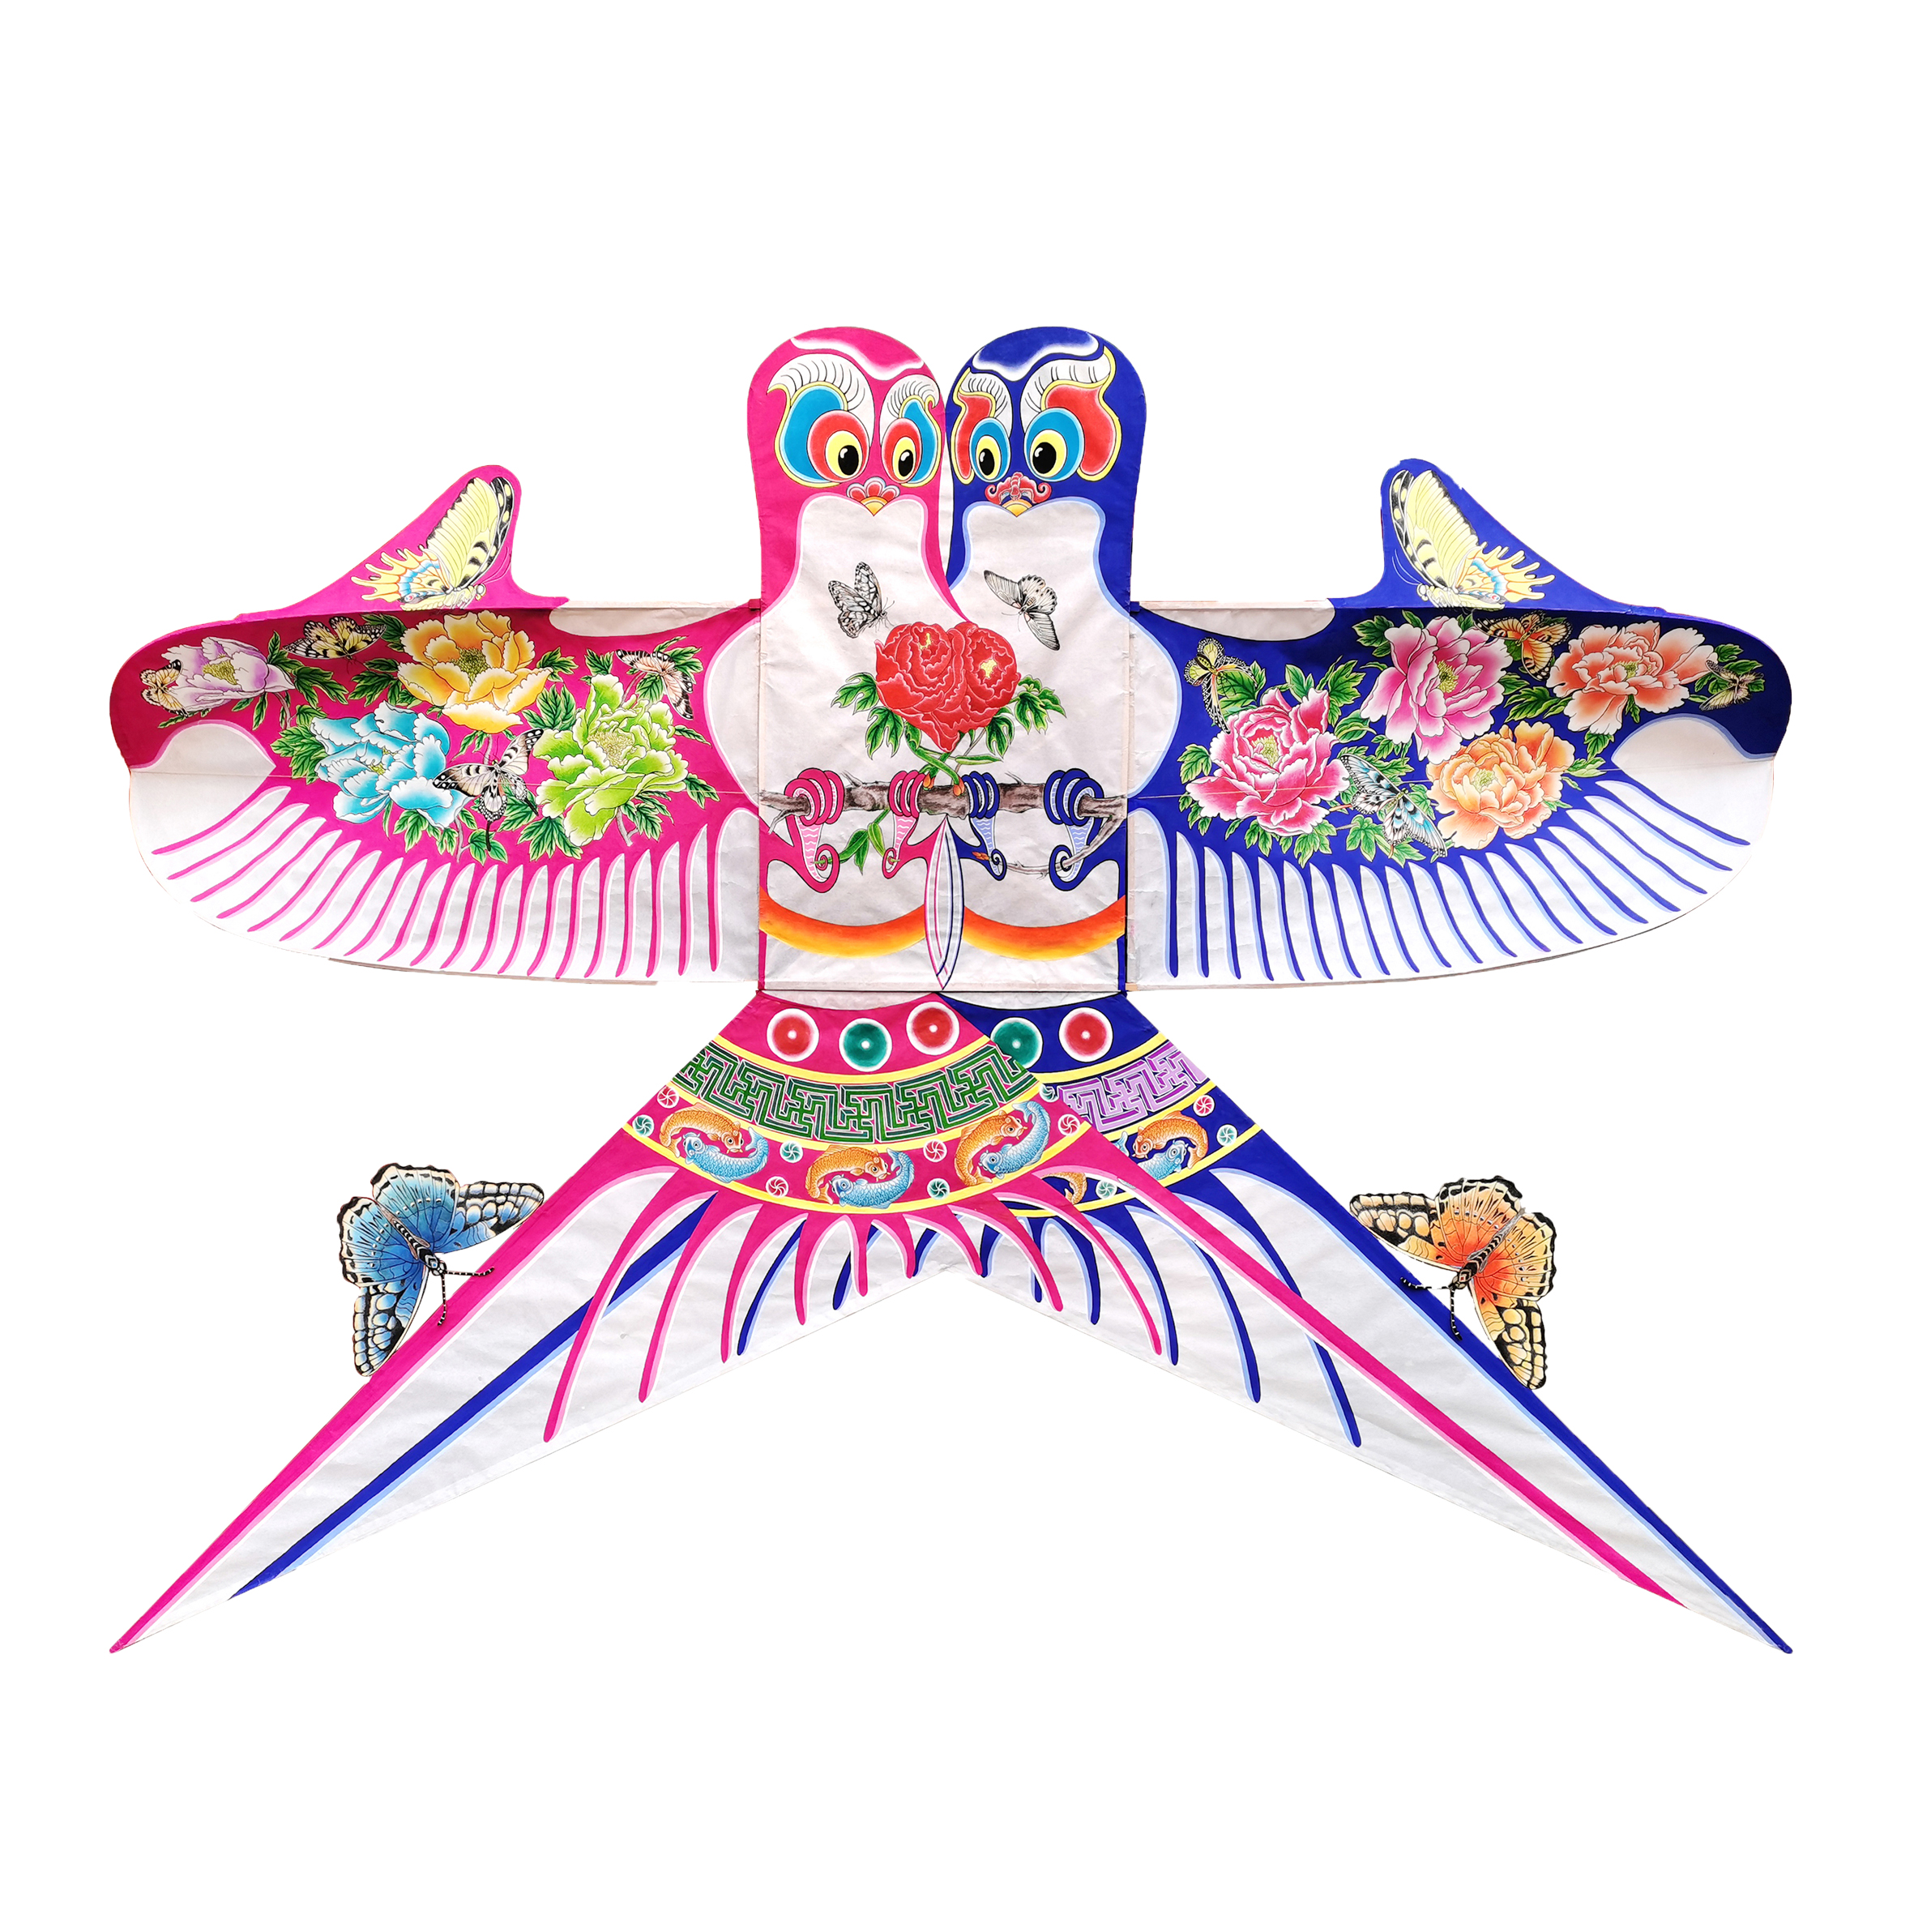 预售定制款「曹雪芹风筝艺术品」缪伯刚亲自手绘传统风筝《比翼双飞》